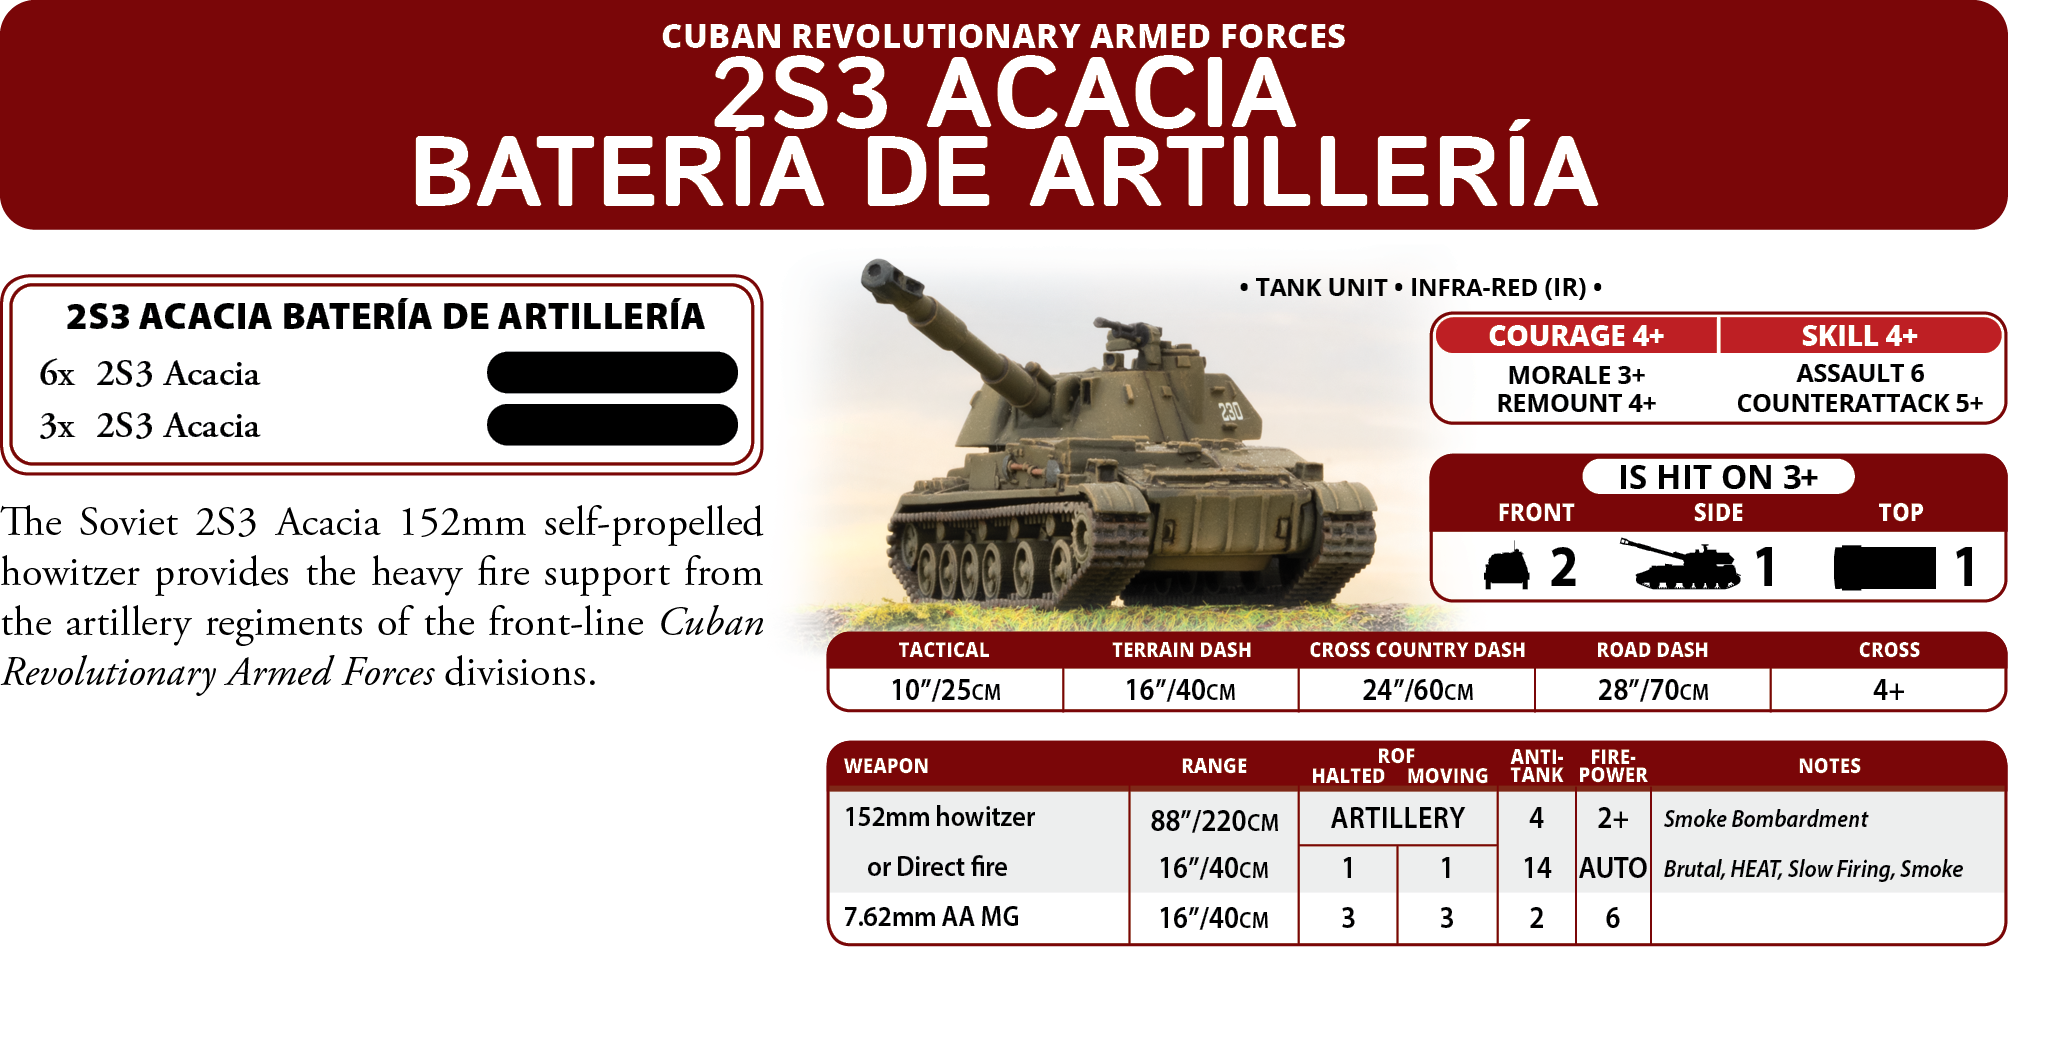 2S3 Acacia Bateria de Artilleria